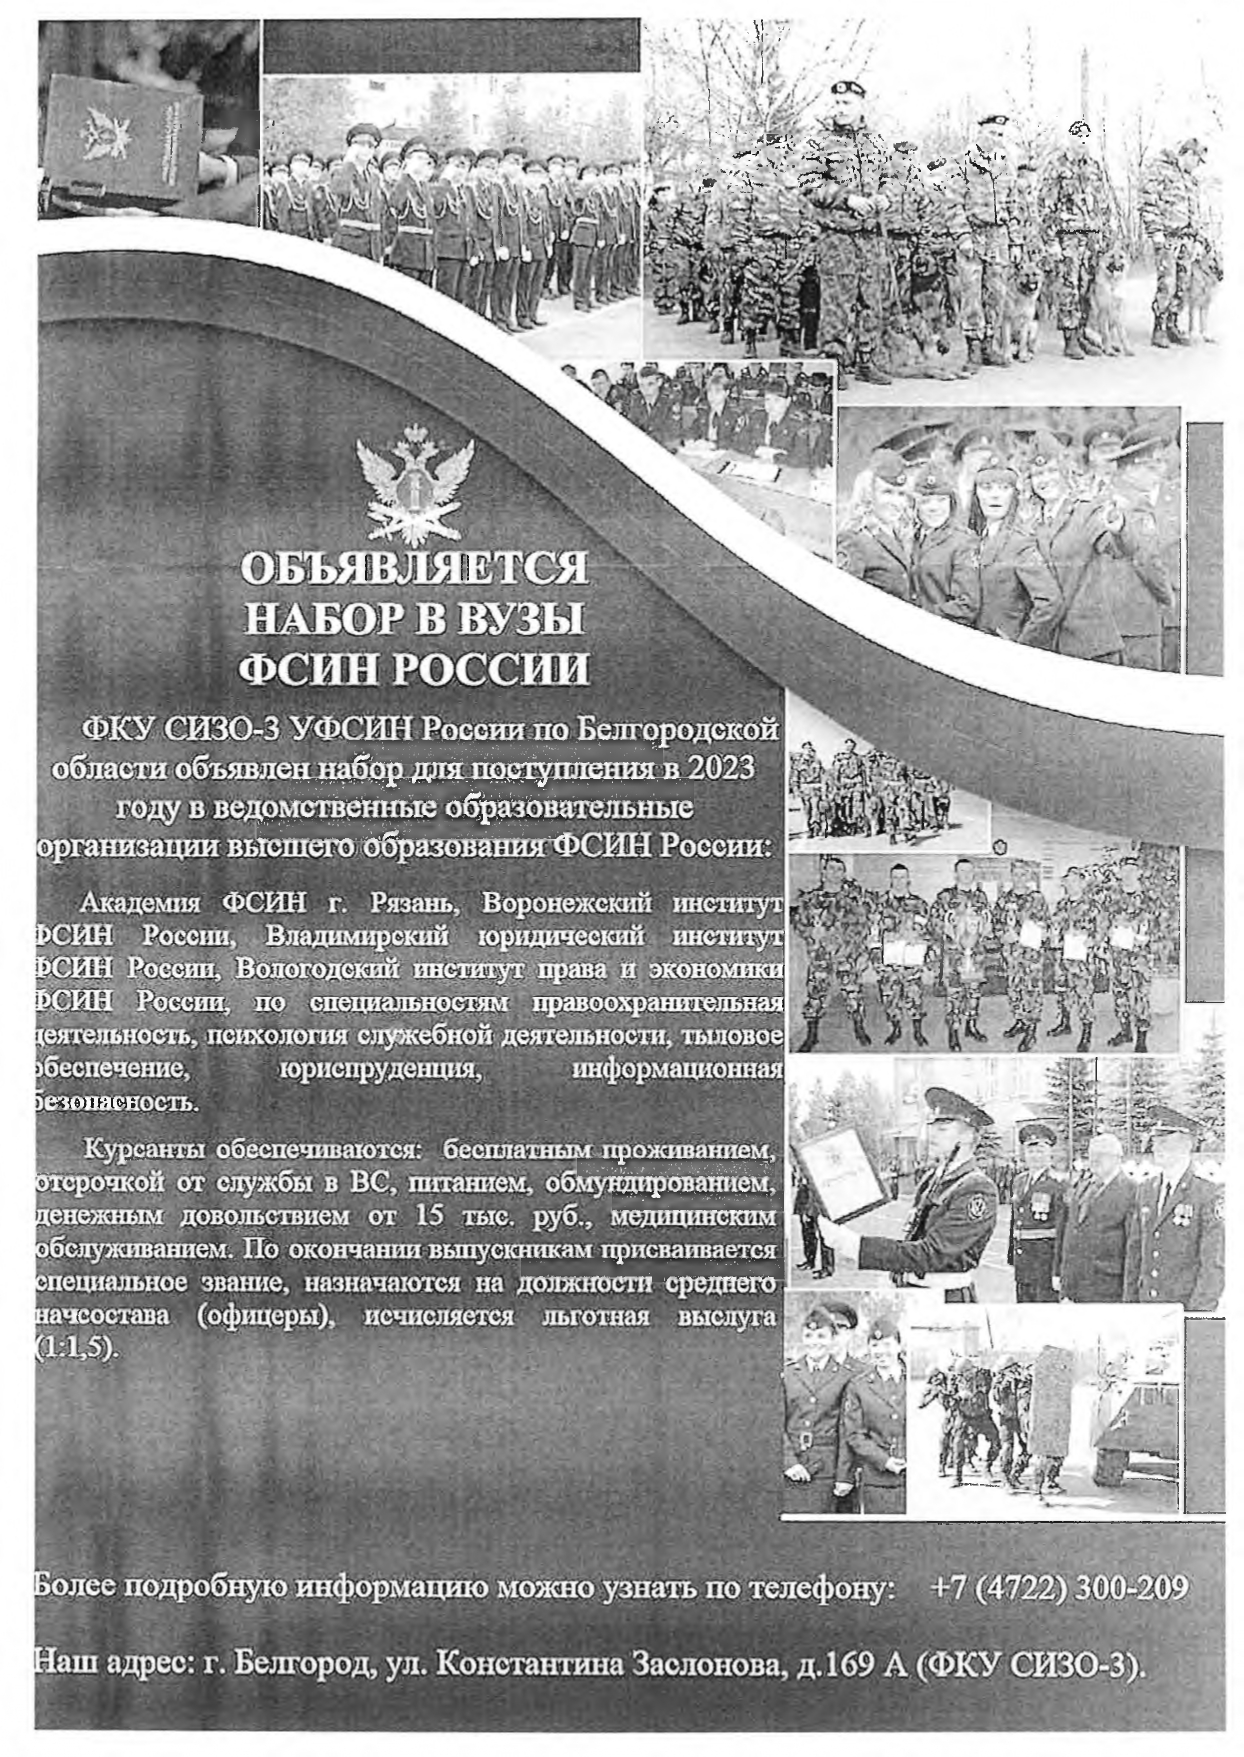 Объявляется набор в высшие учебные заведения ФСИН России.